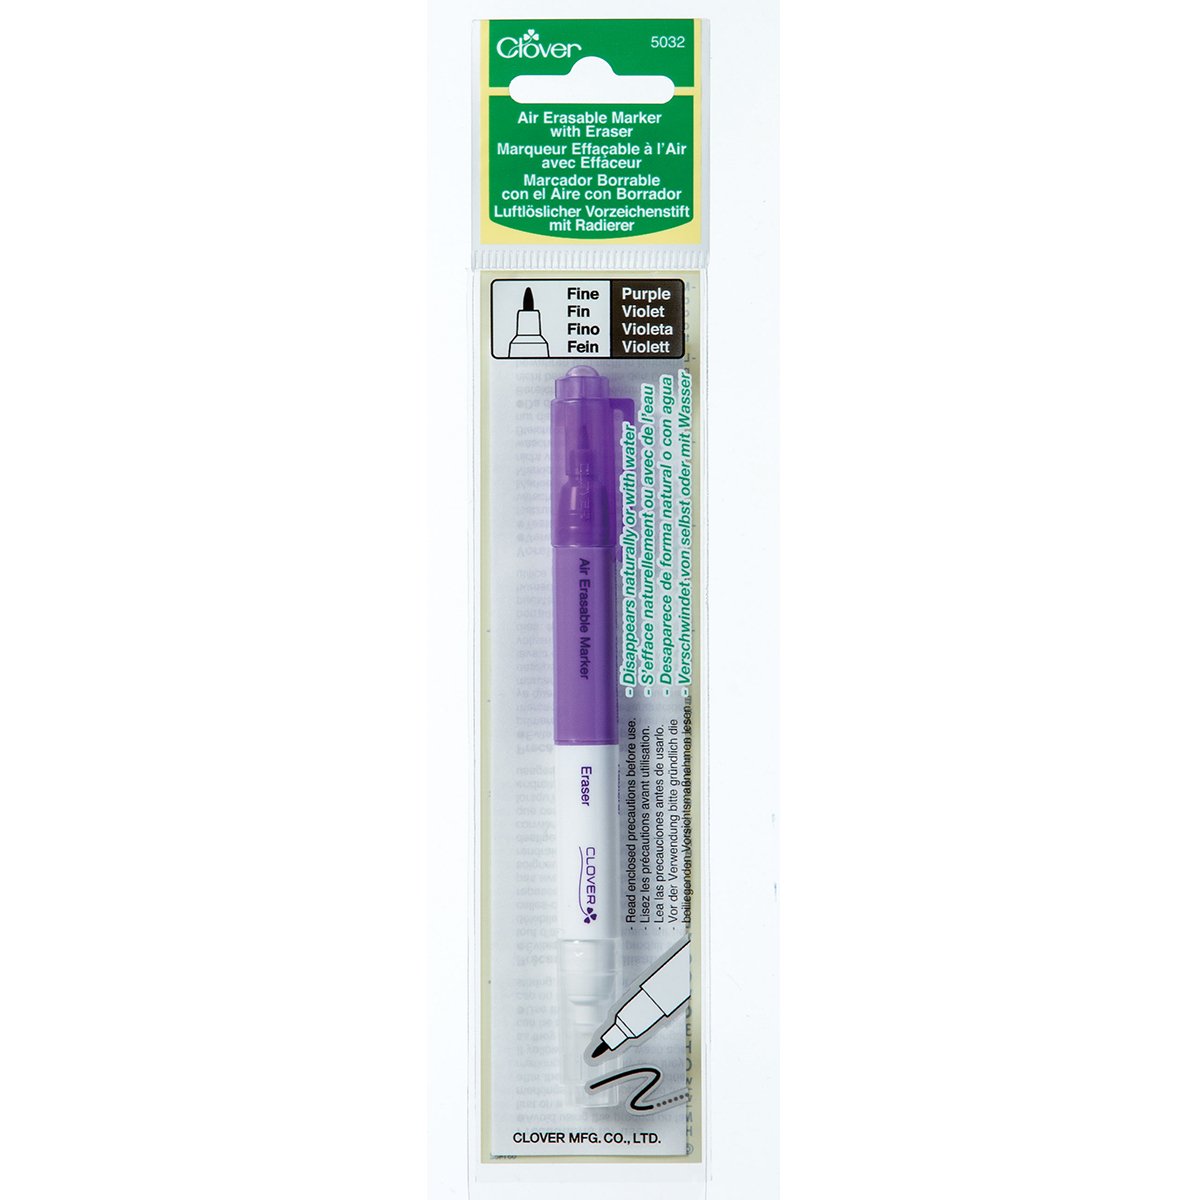 Air Erasable Marker With Eraser – Clover Needlecraft, Inc.